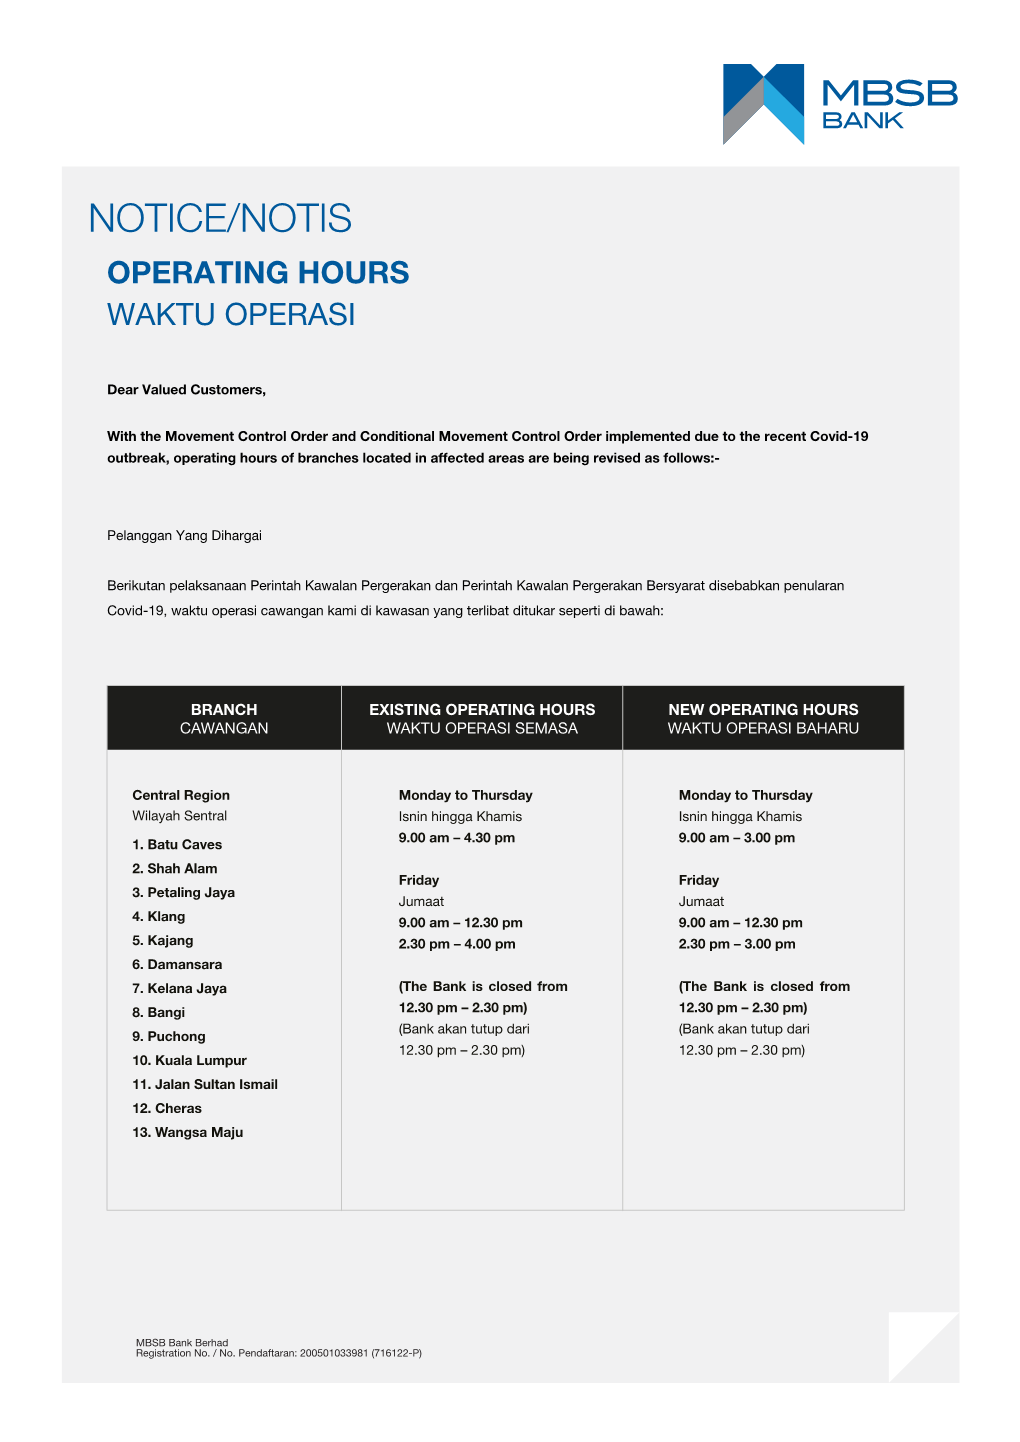 Operating Hours Waktu Operasi